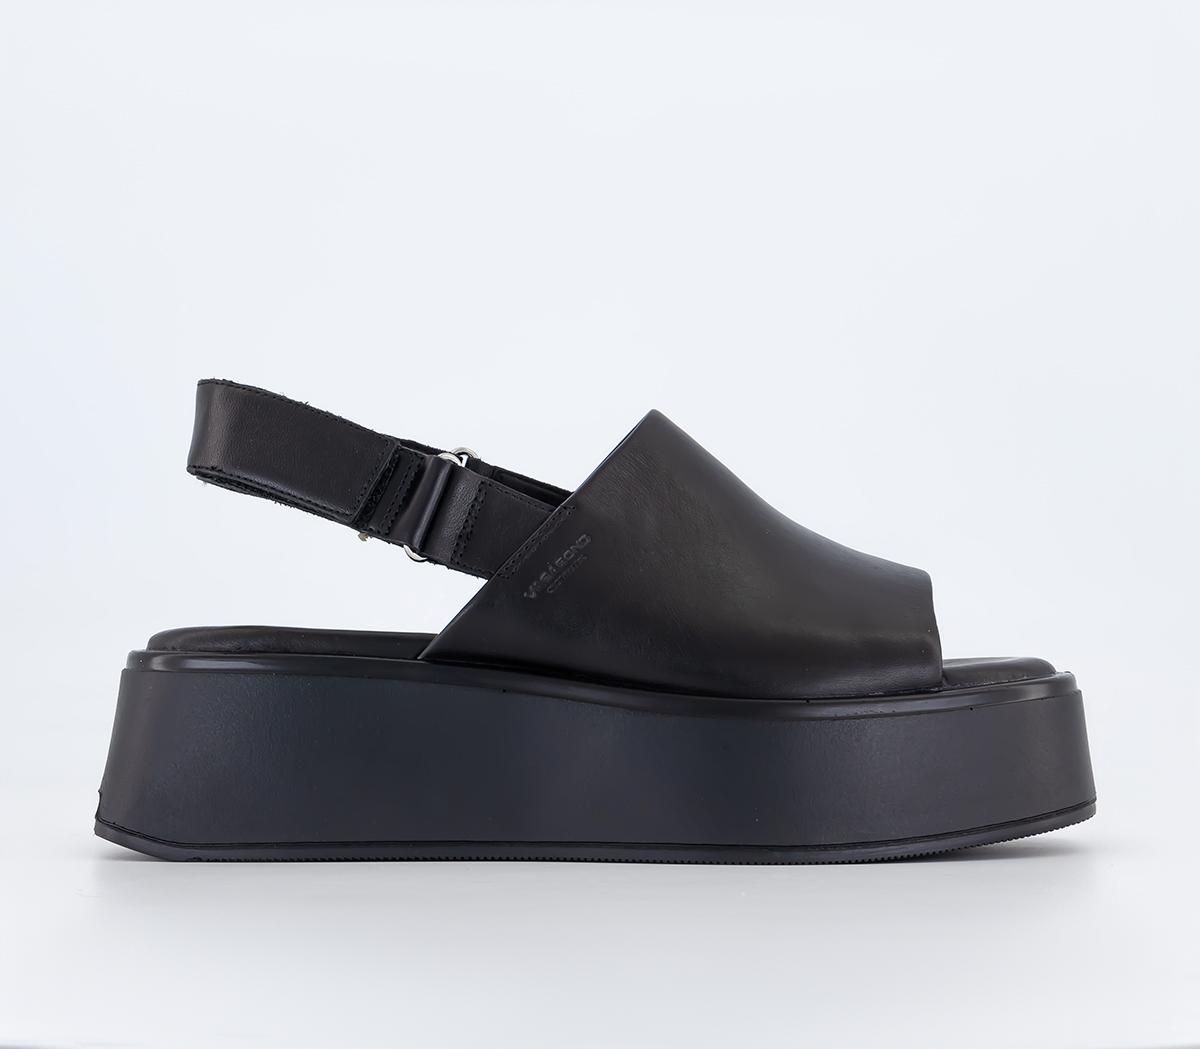 Vagabond Shoemakers Courntey Sling Back Sandals Black Leather - Flat ...